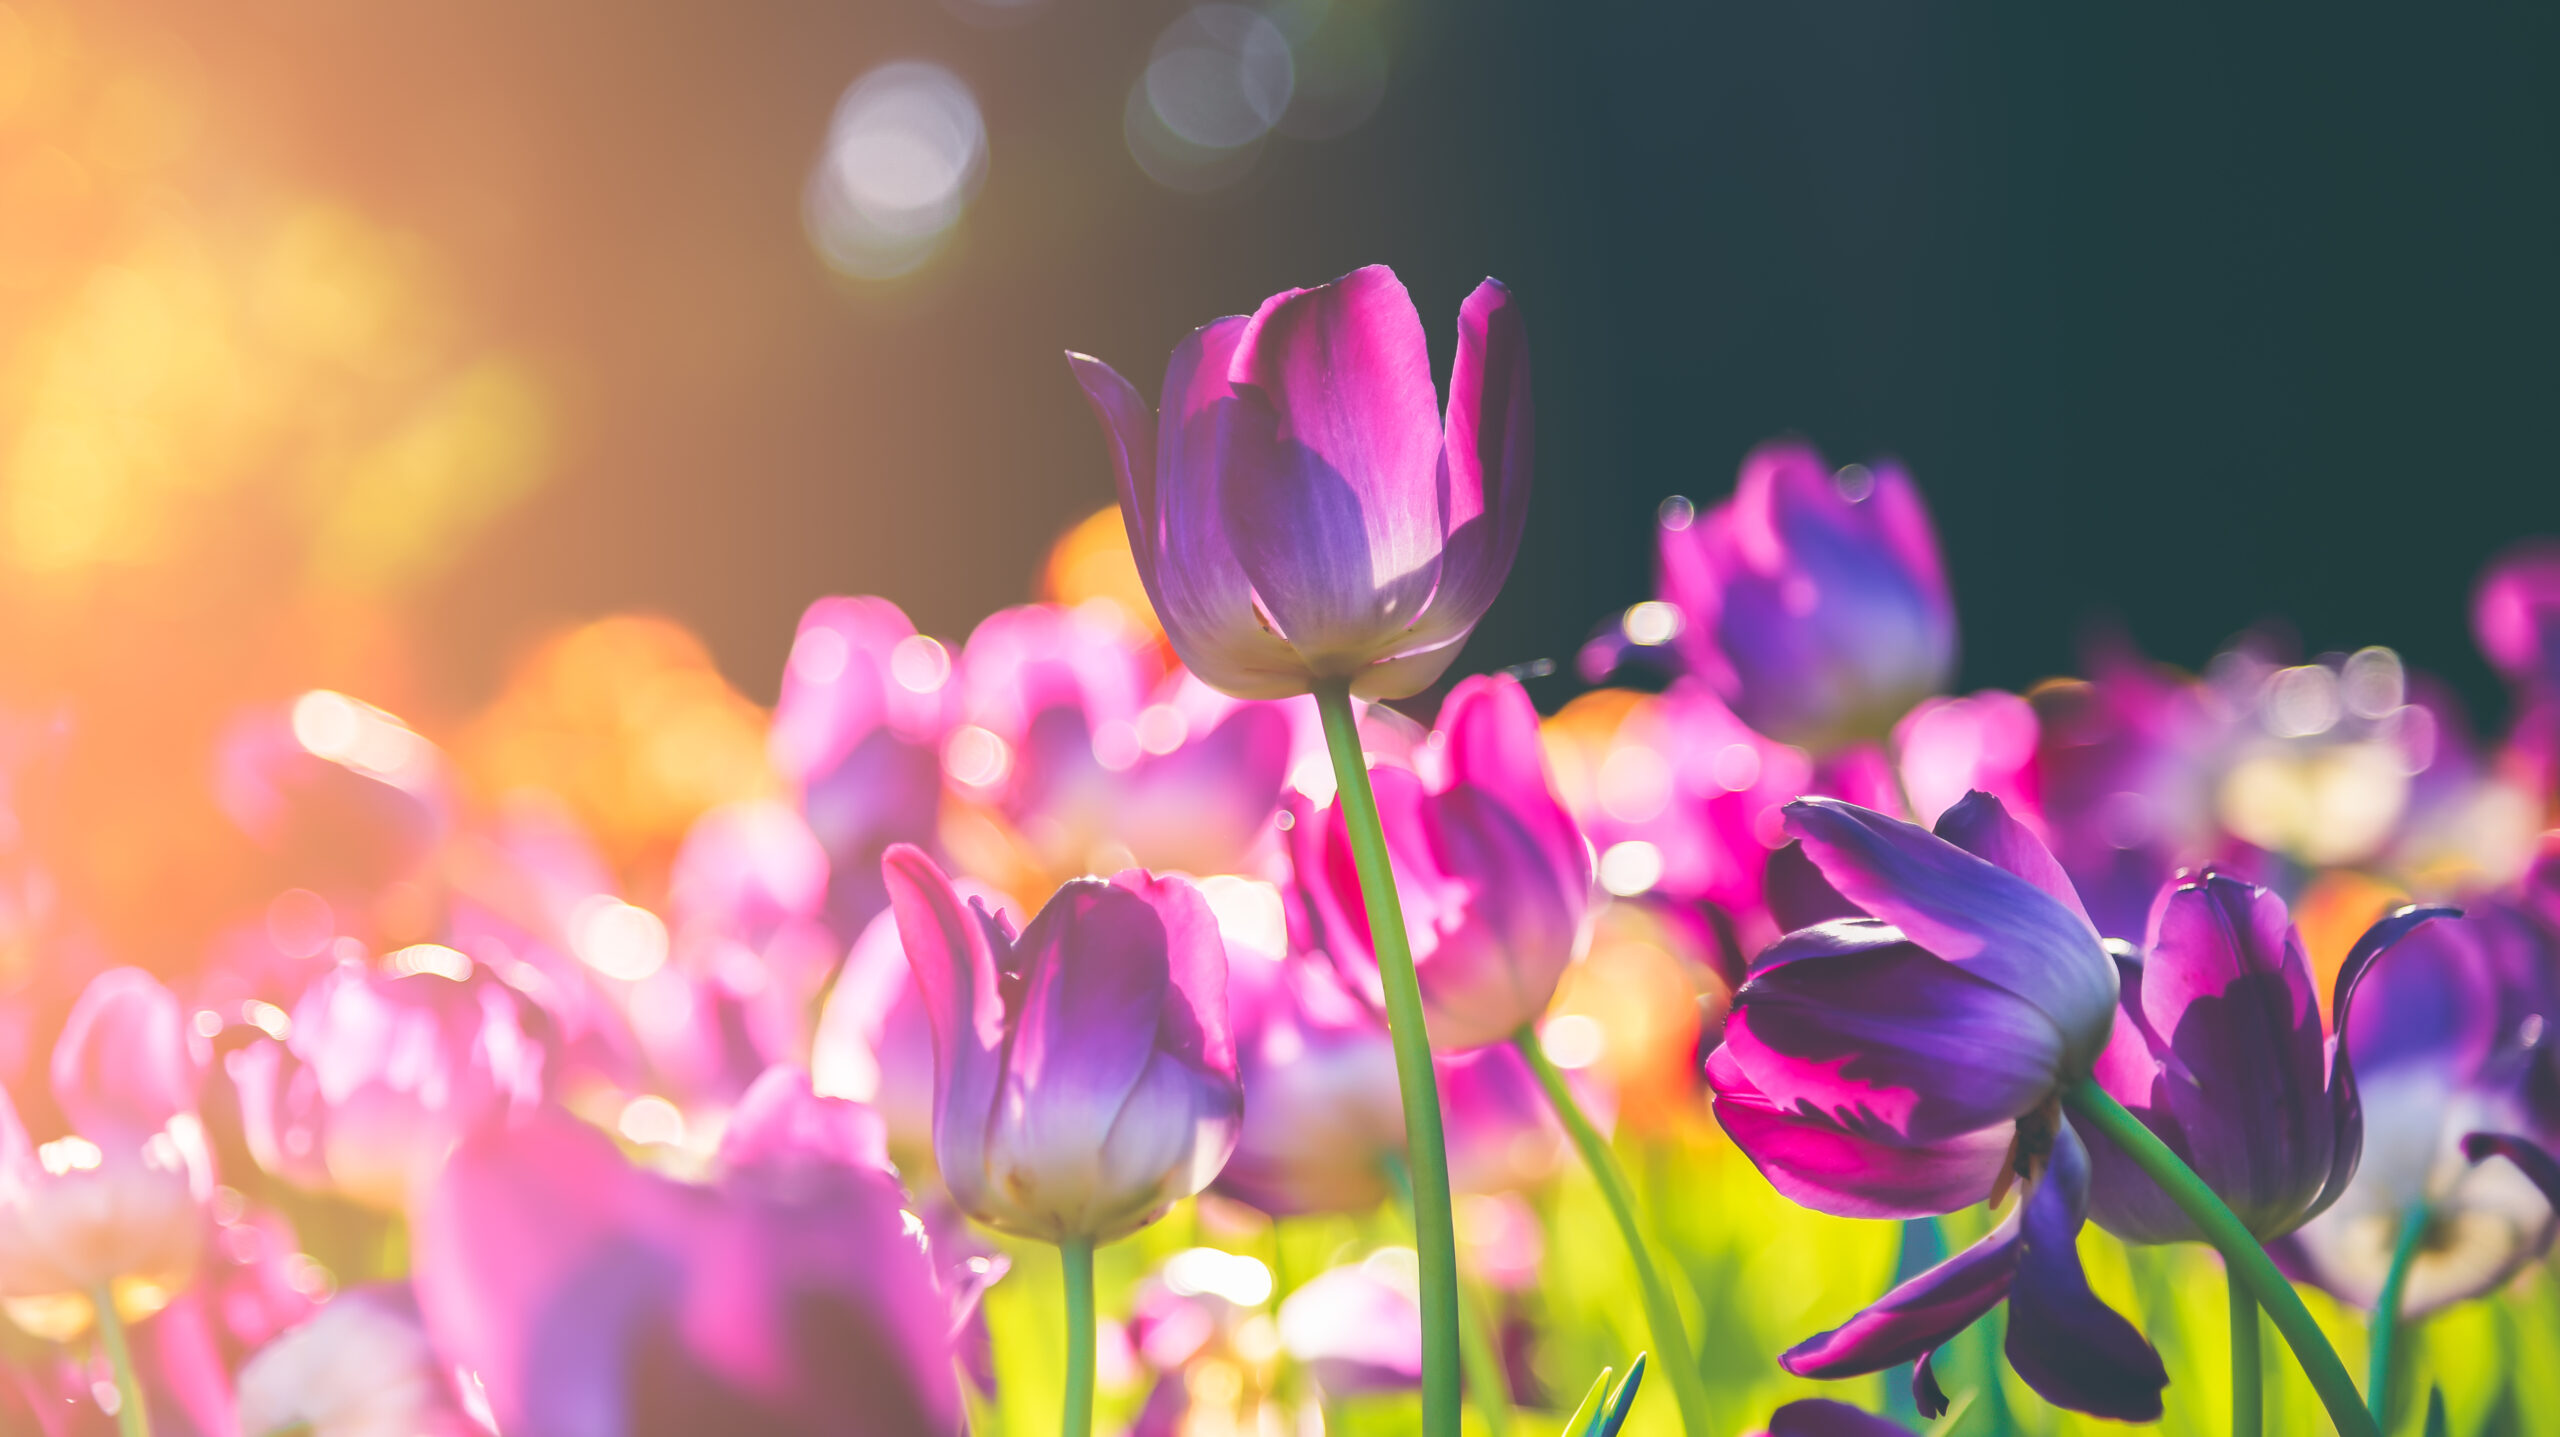 Viele bunte Tulpen, eine der beliebtesten Blumen in Sporkmanns Gärtnerei